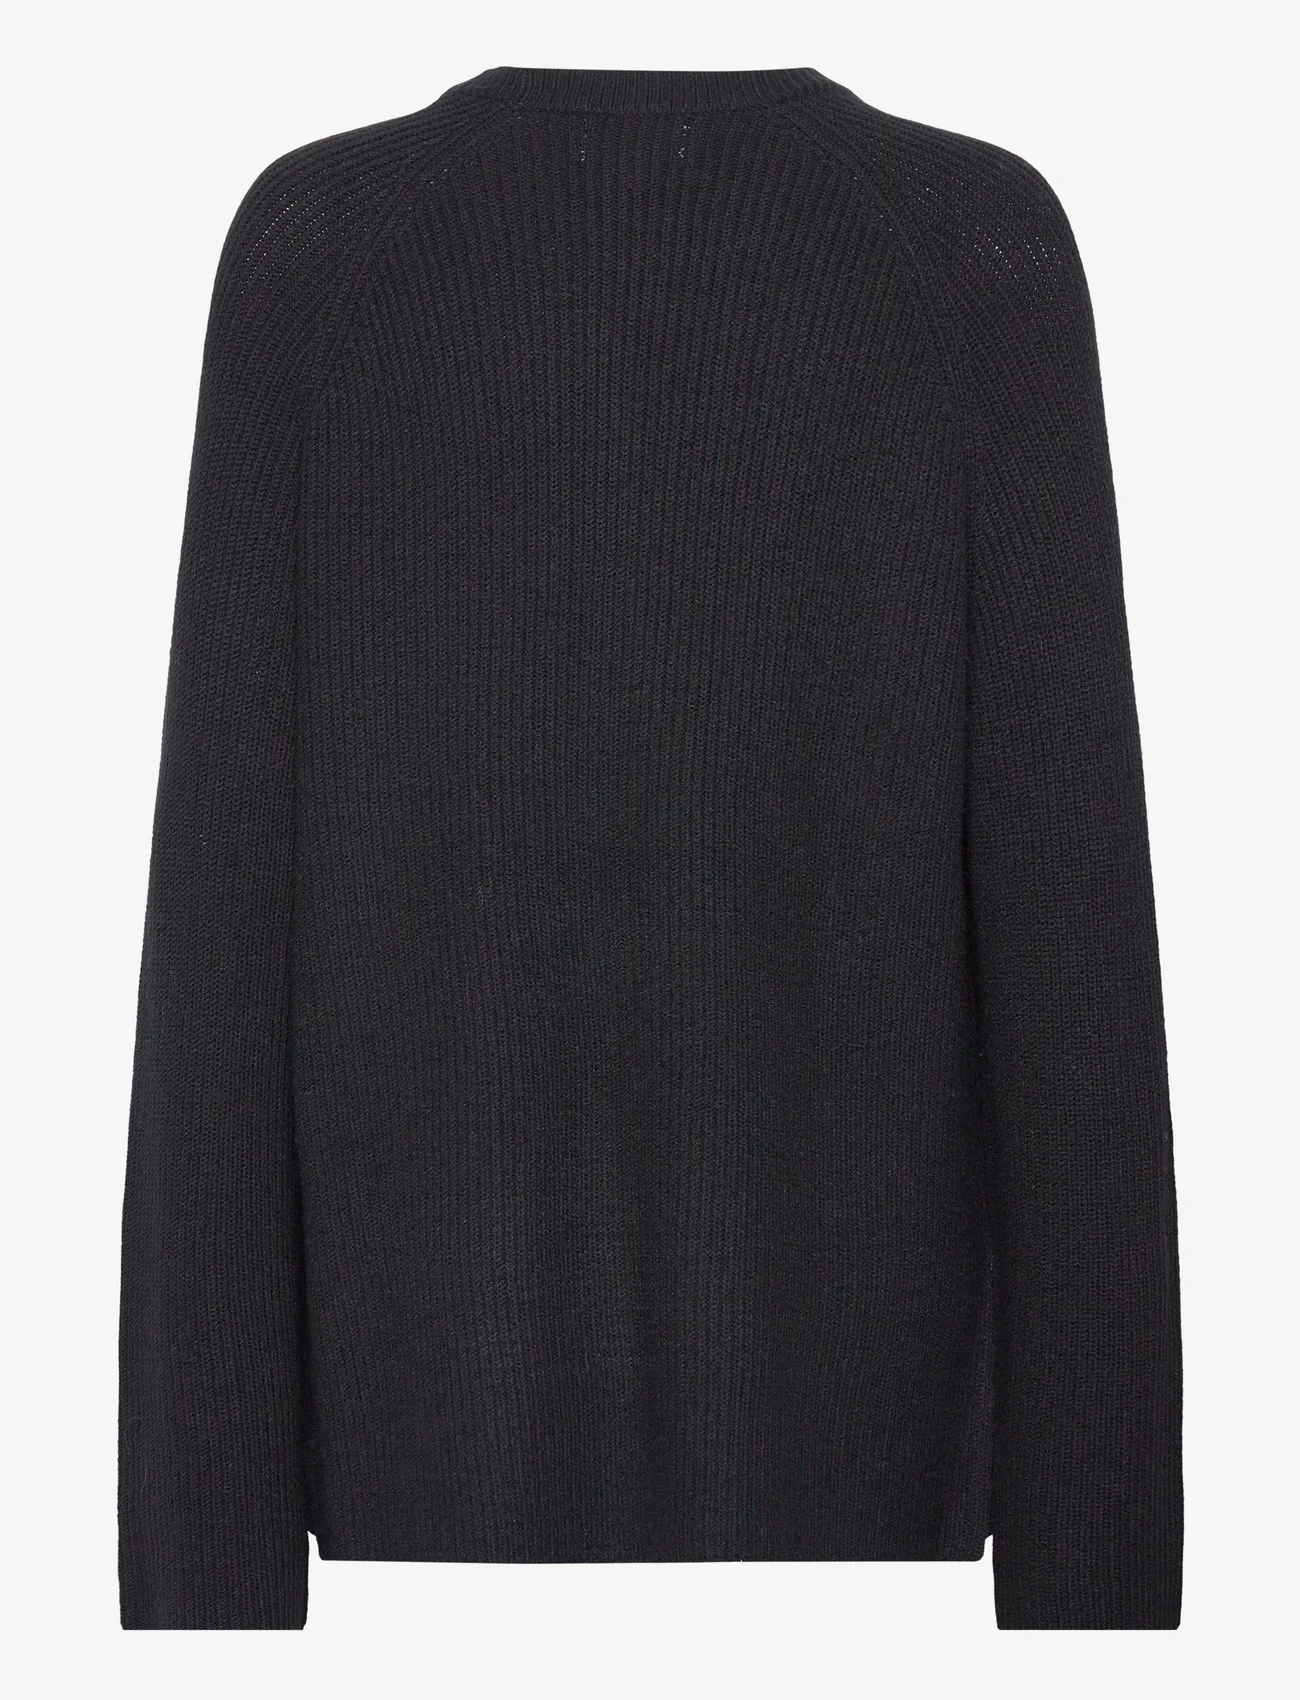 Object - OBJMALENA L/S KNIT PULLOVER - sweaters - black - 1